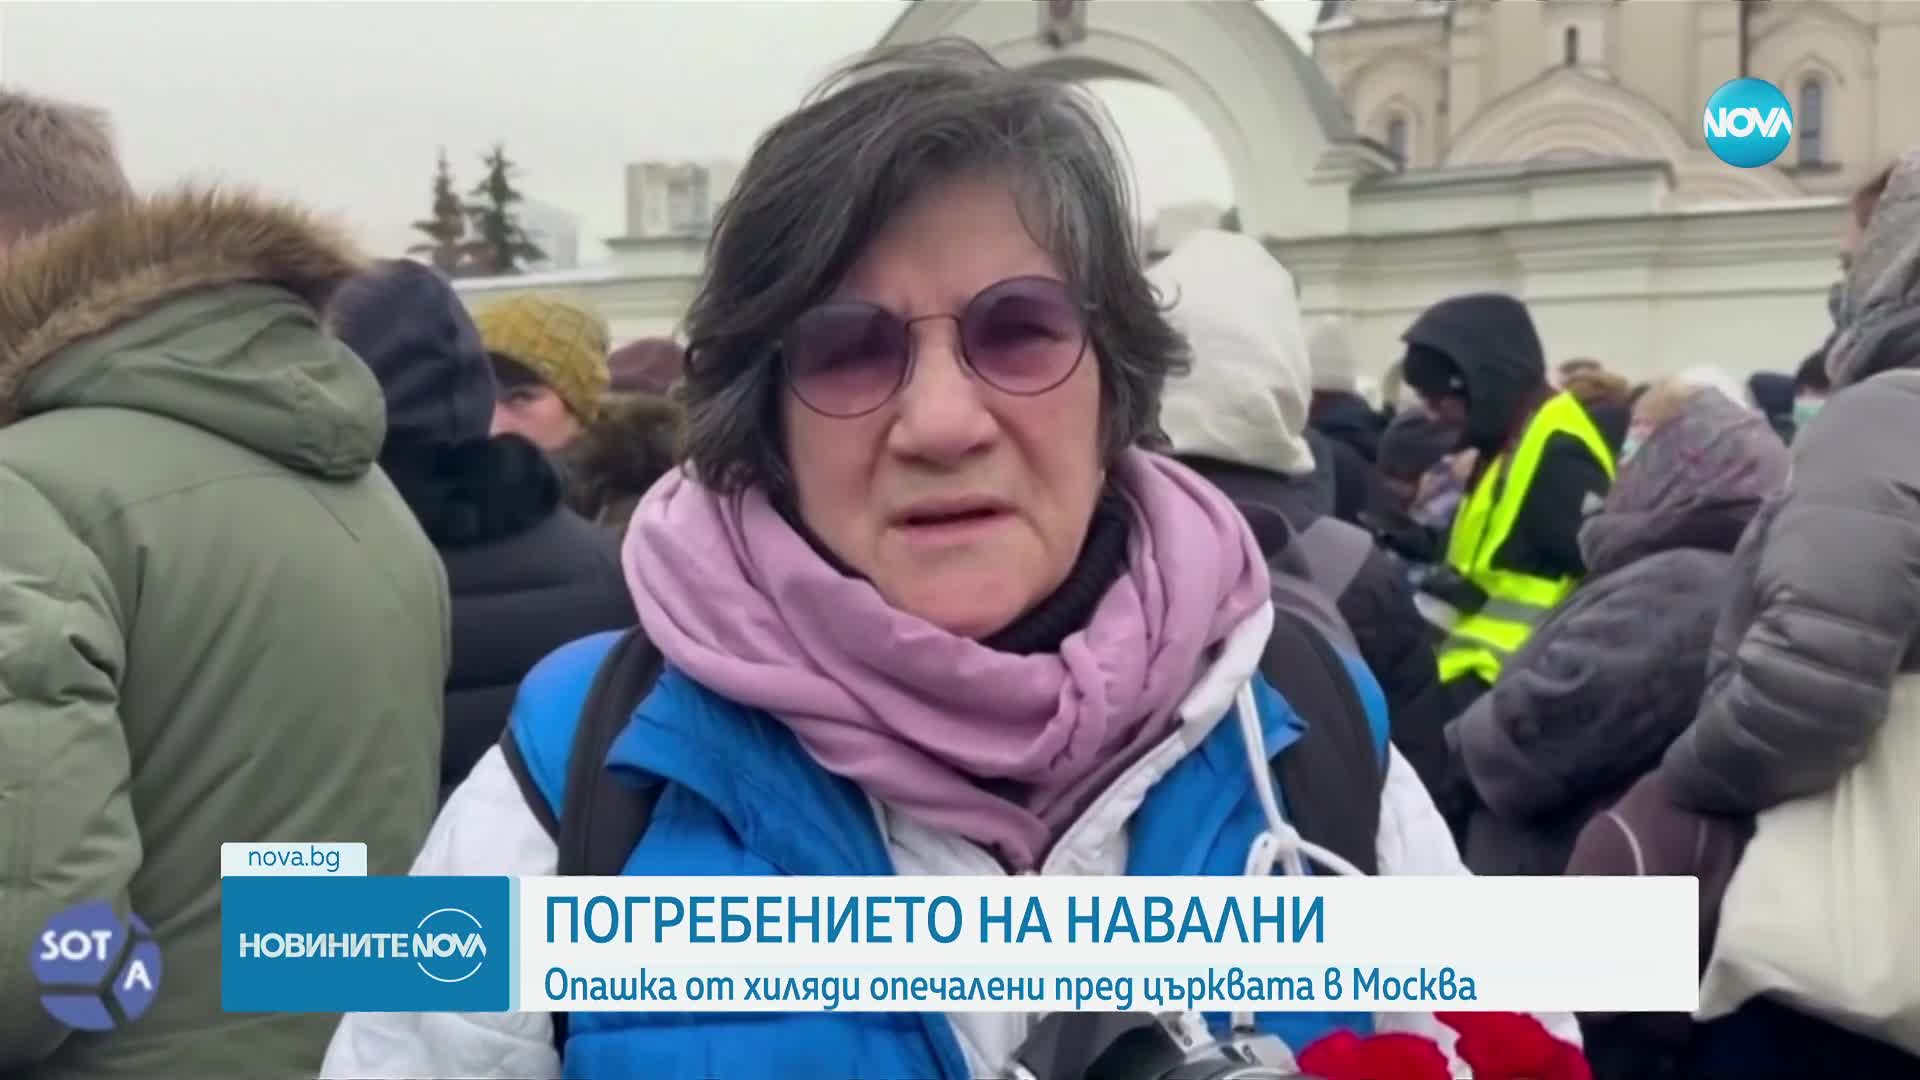 Защо вдовицата на Навални не присъства на погребението му